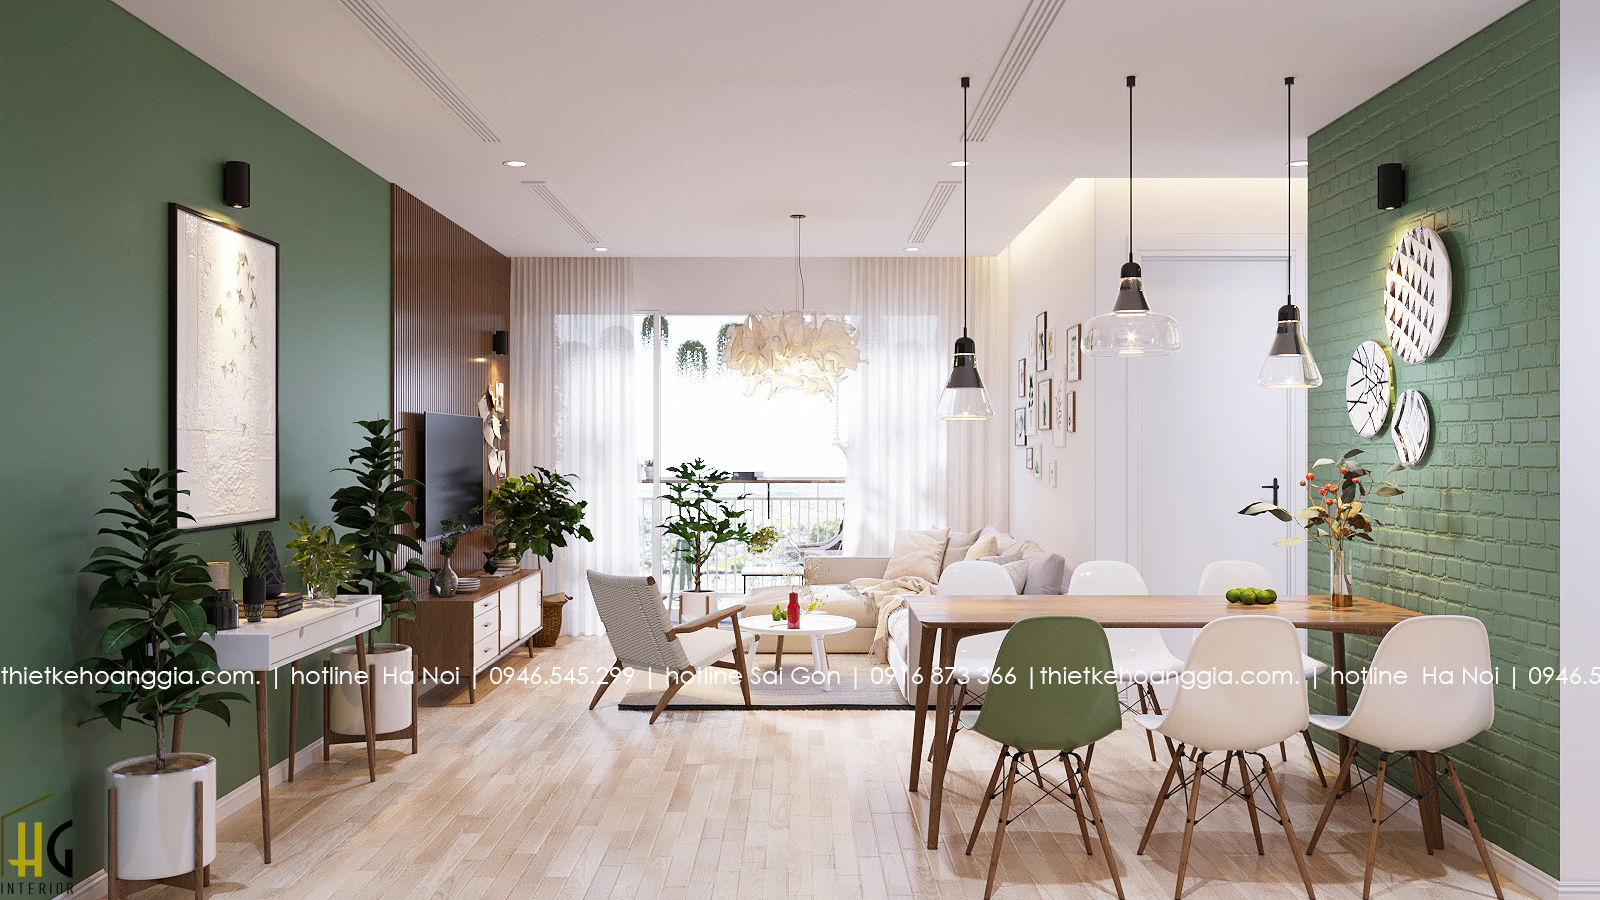 Thiết kế nội thất chung cư 55m cho chị Lan Anh, Nội Thất Hoàng Gia Nội Thất Hoàng Gia Aziatische woonkamers